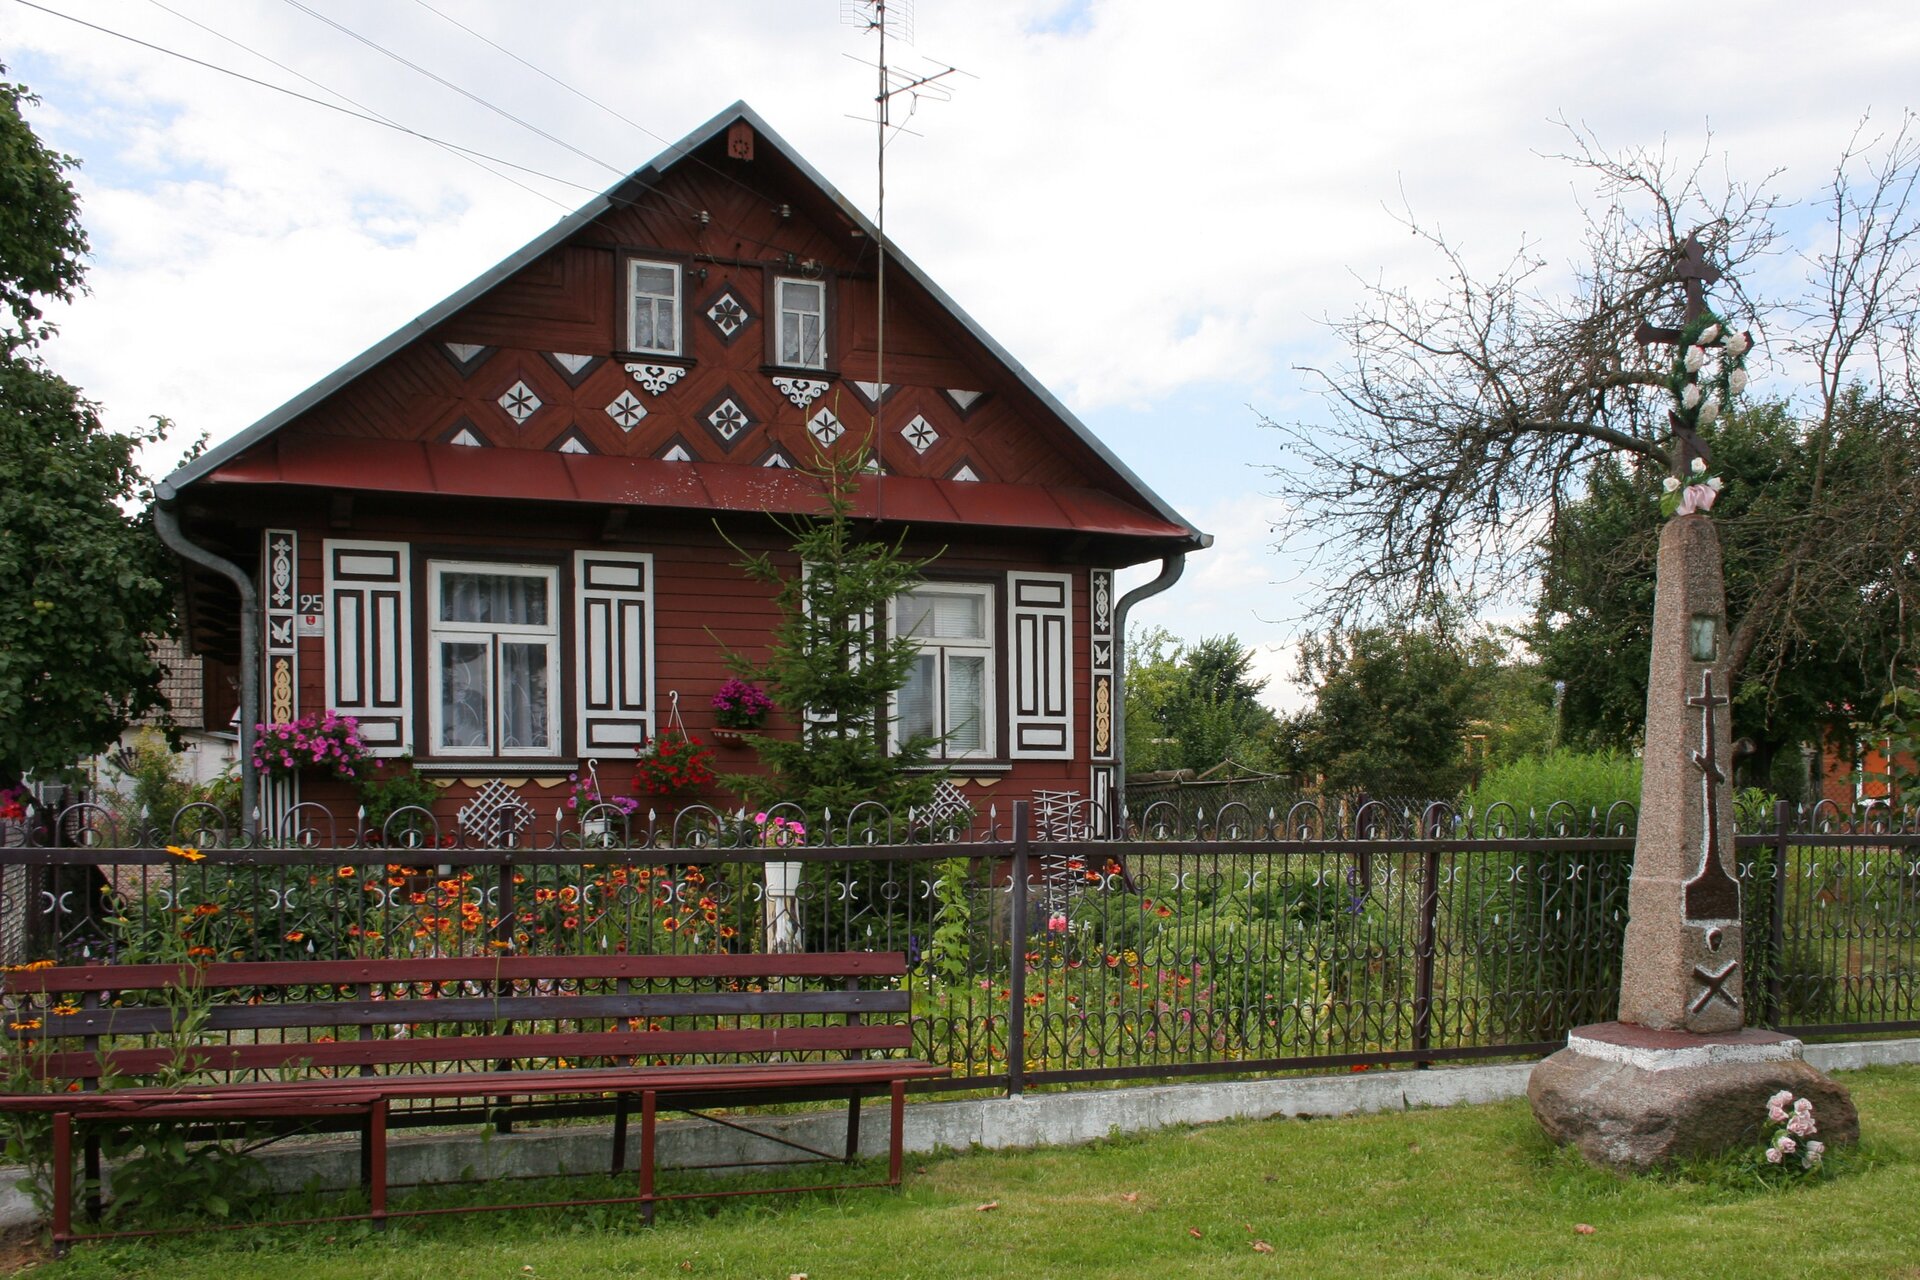 Zdjęcie przedstawia drewniany dom jednorodzinny wybudowany w ogrodzie. Dom, ze spadzistym dachem, ma ozdobne okiennice oraz rzeźbienia na fasadzie.   